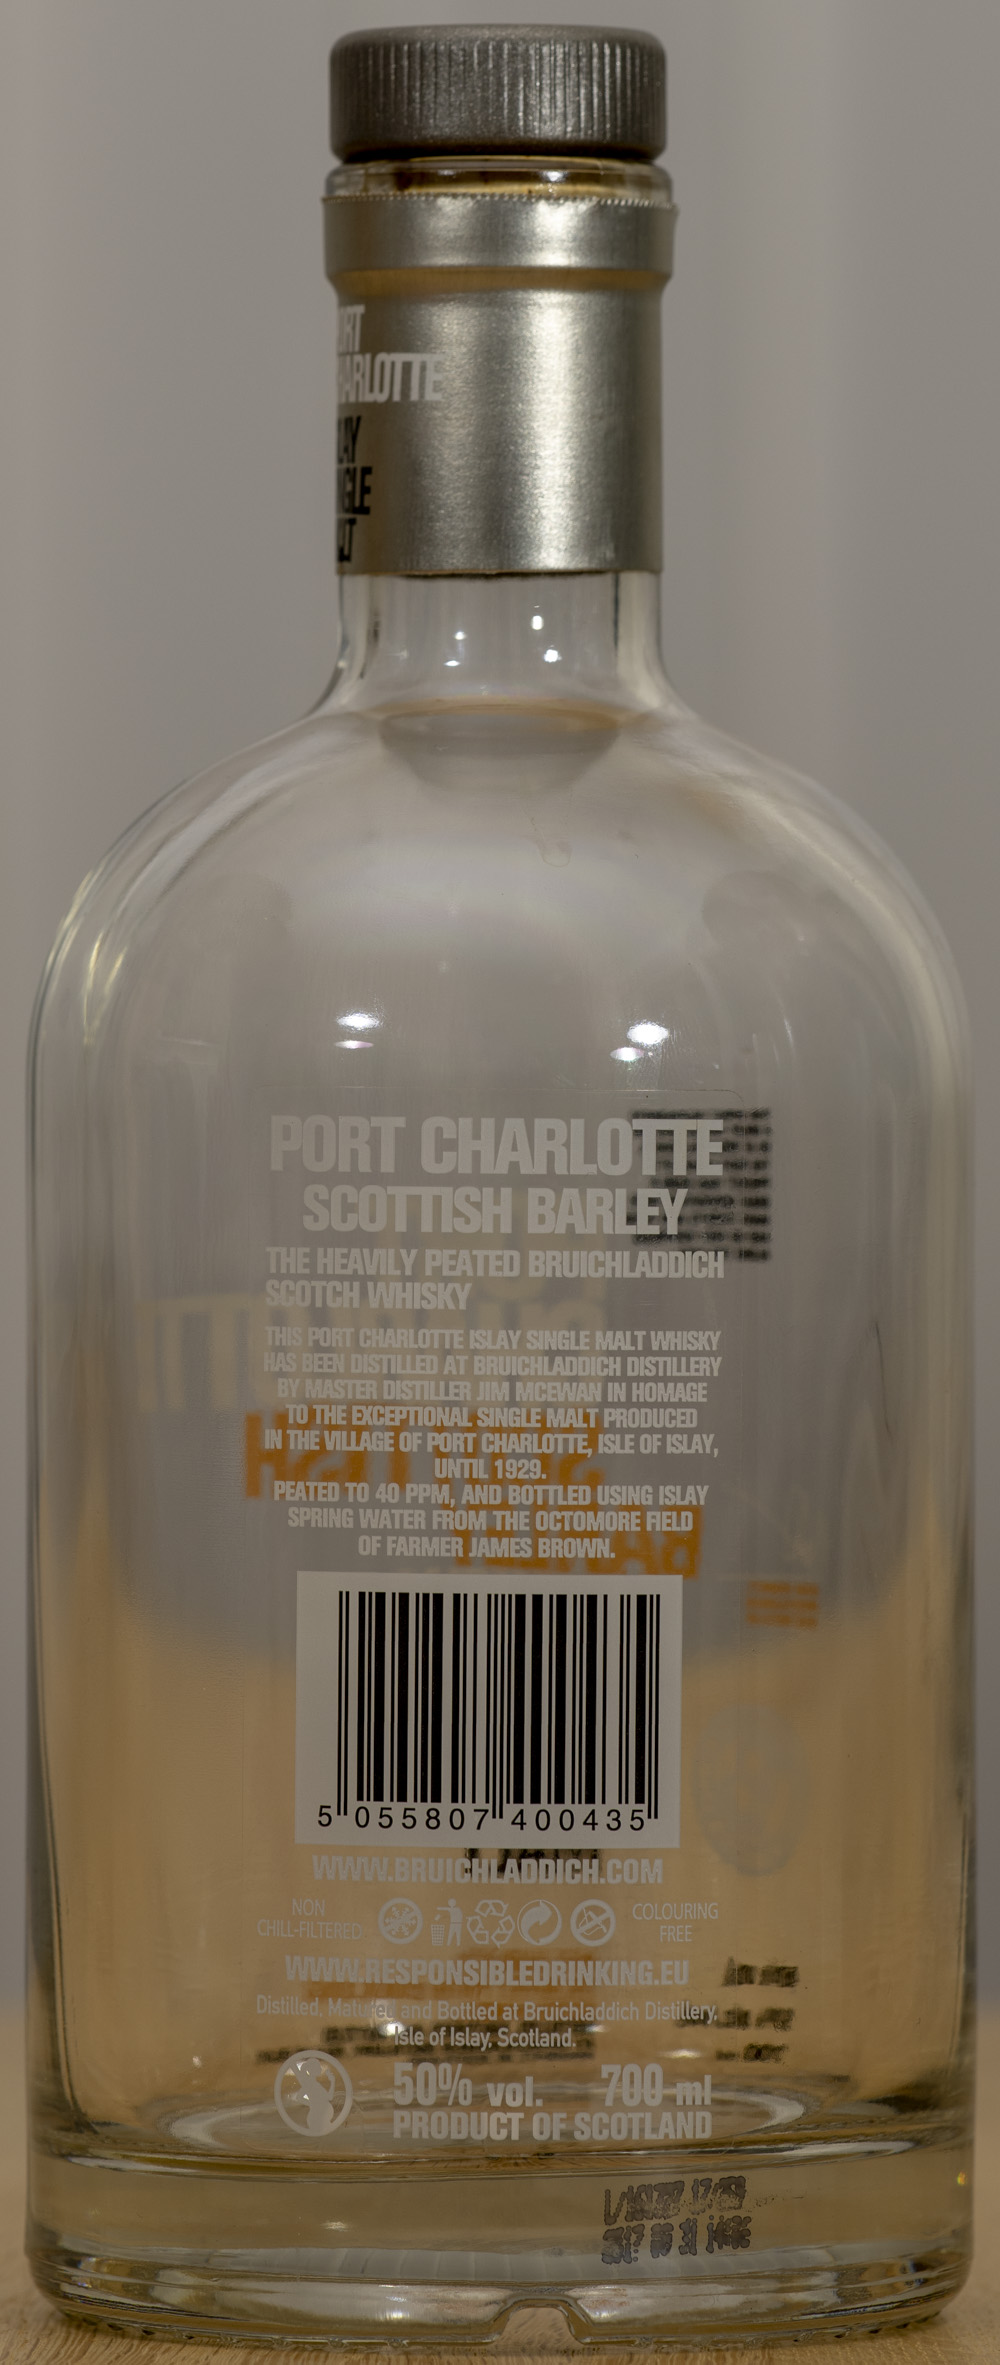 Billede: PHC_1575 - Port Charlotte Scottish Barley - bottle back.jpg